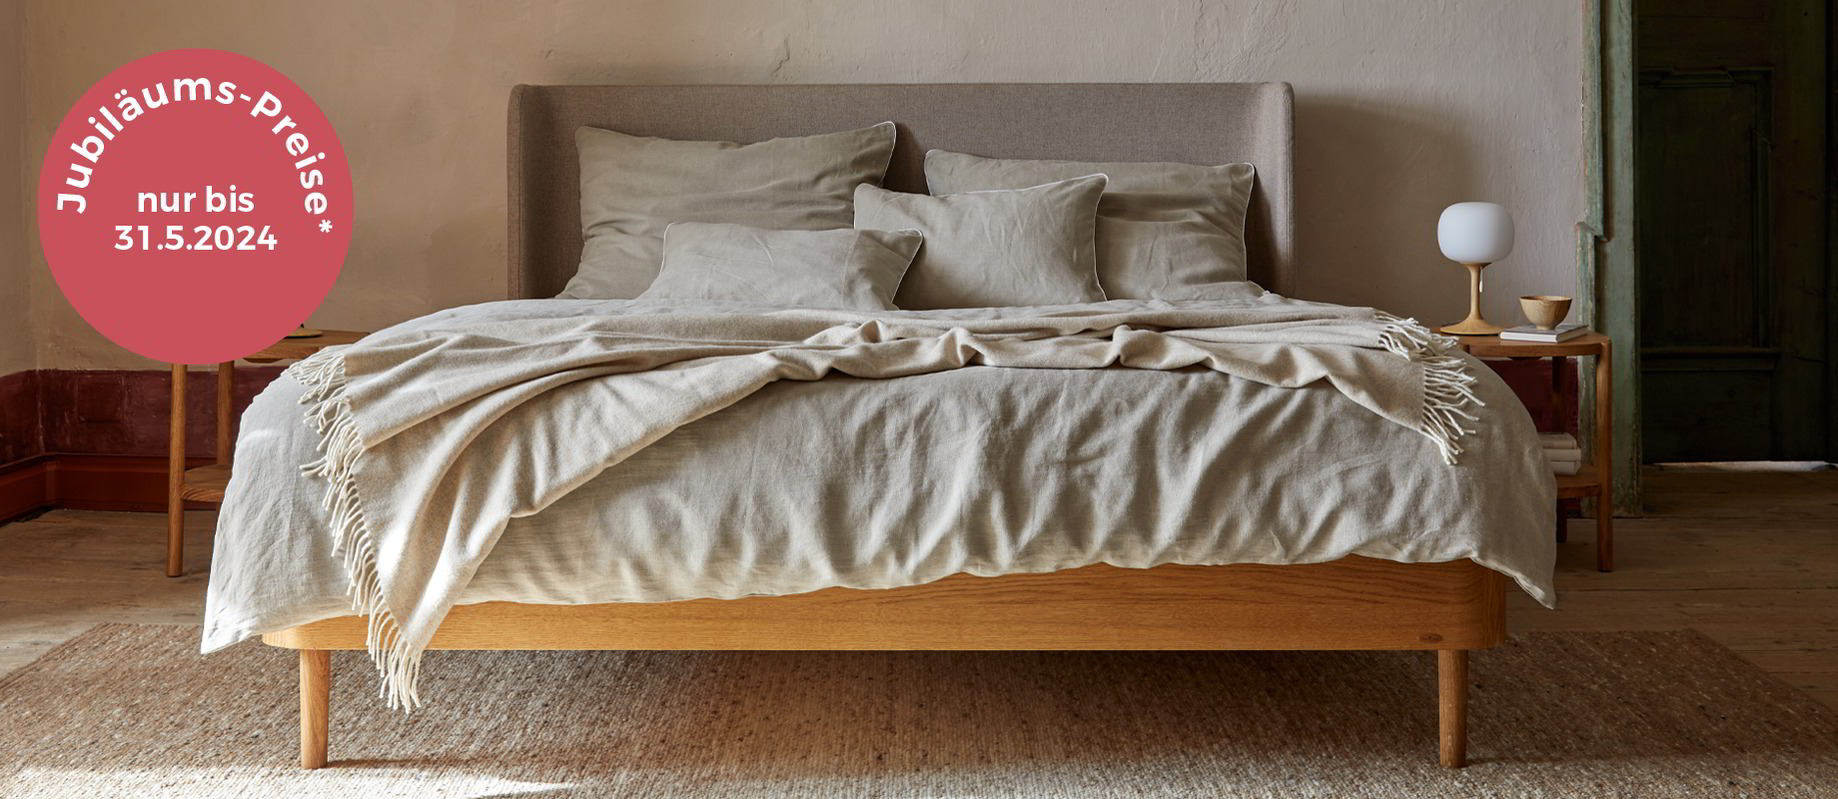 Holzbett mit Polsterbetthaupt steht auf beigem Teppich, Jubiläumspreise